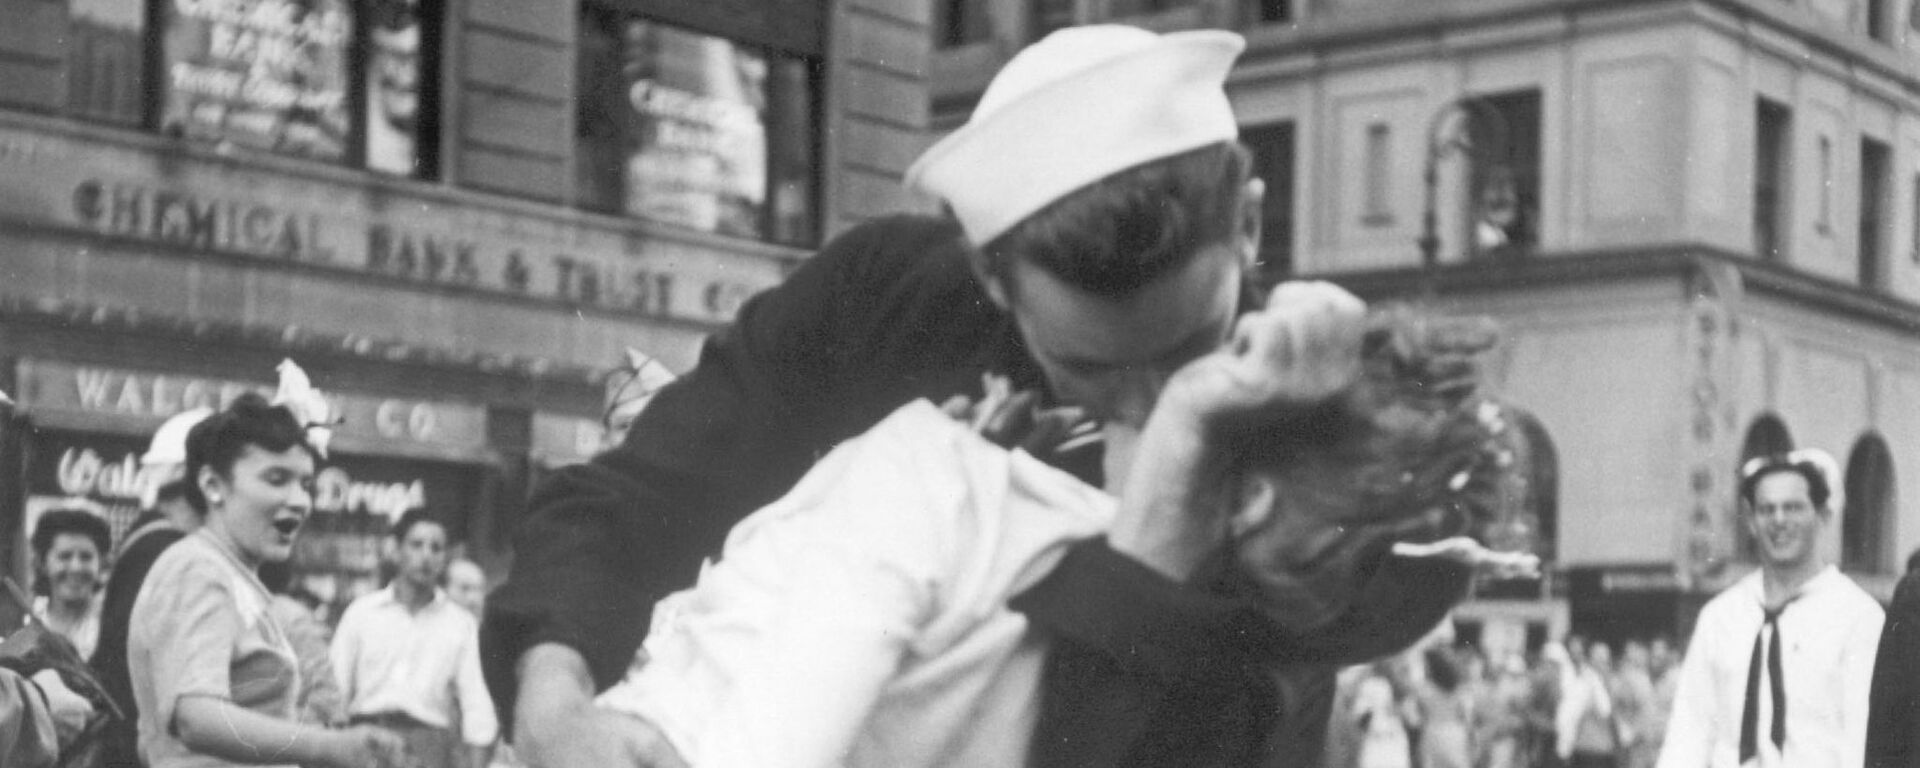 Моряк и медсестра страстно целуются на Таймс-сквер в Нью-Йорке - Sputnik Mundo, 1920, 06.07.2021